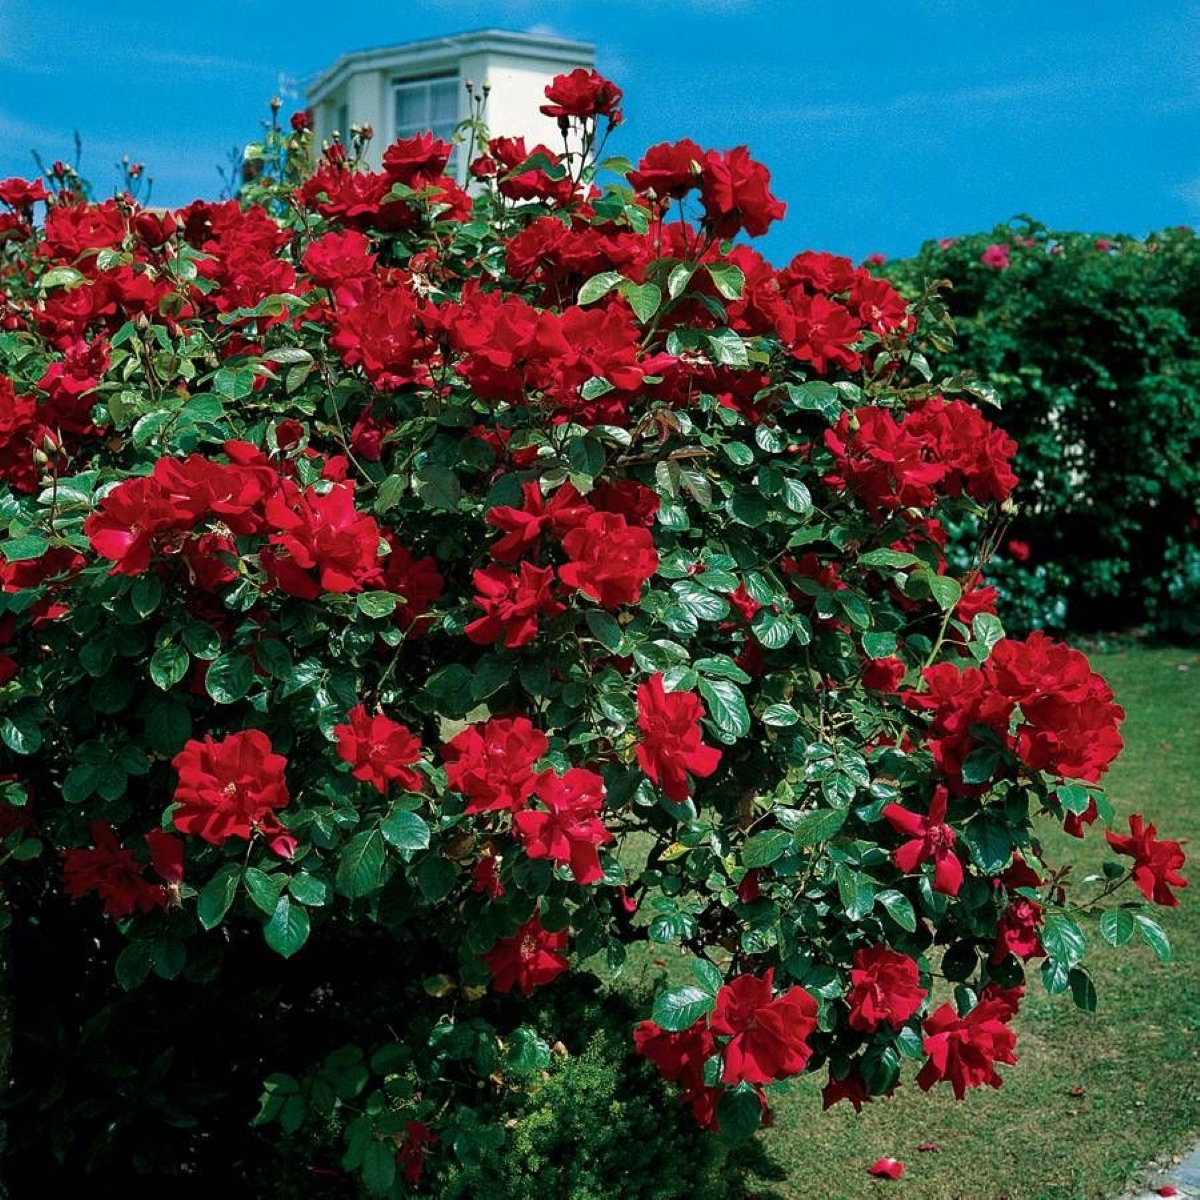 Large red rose bush